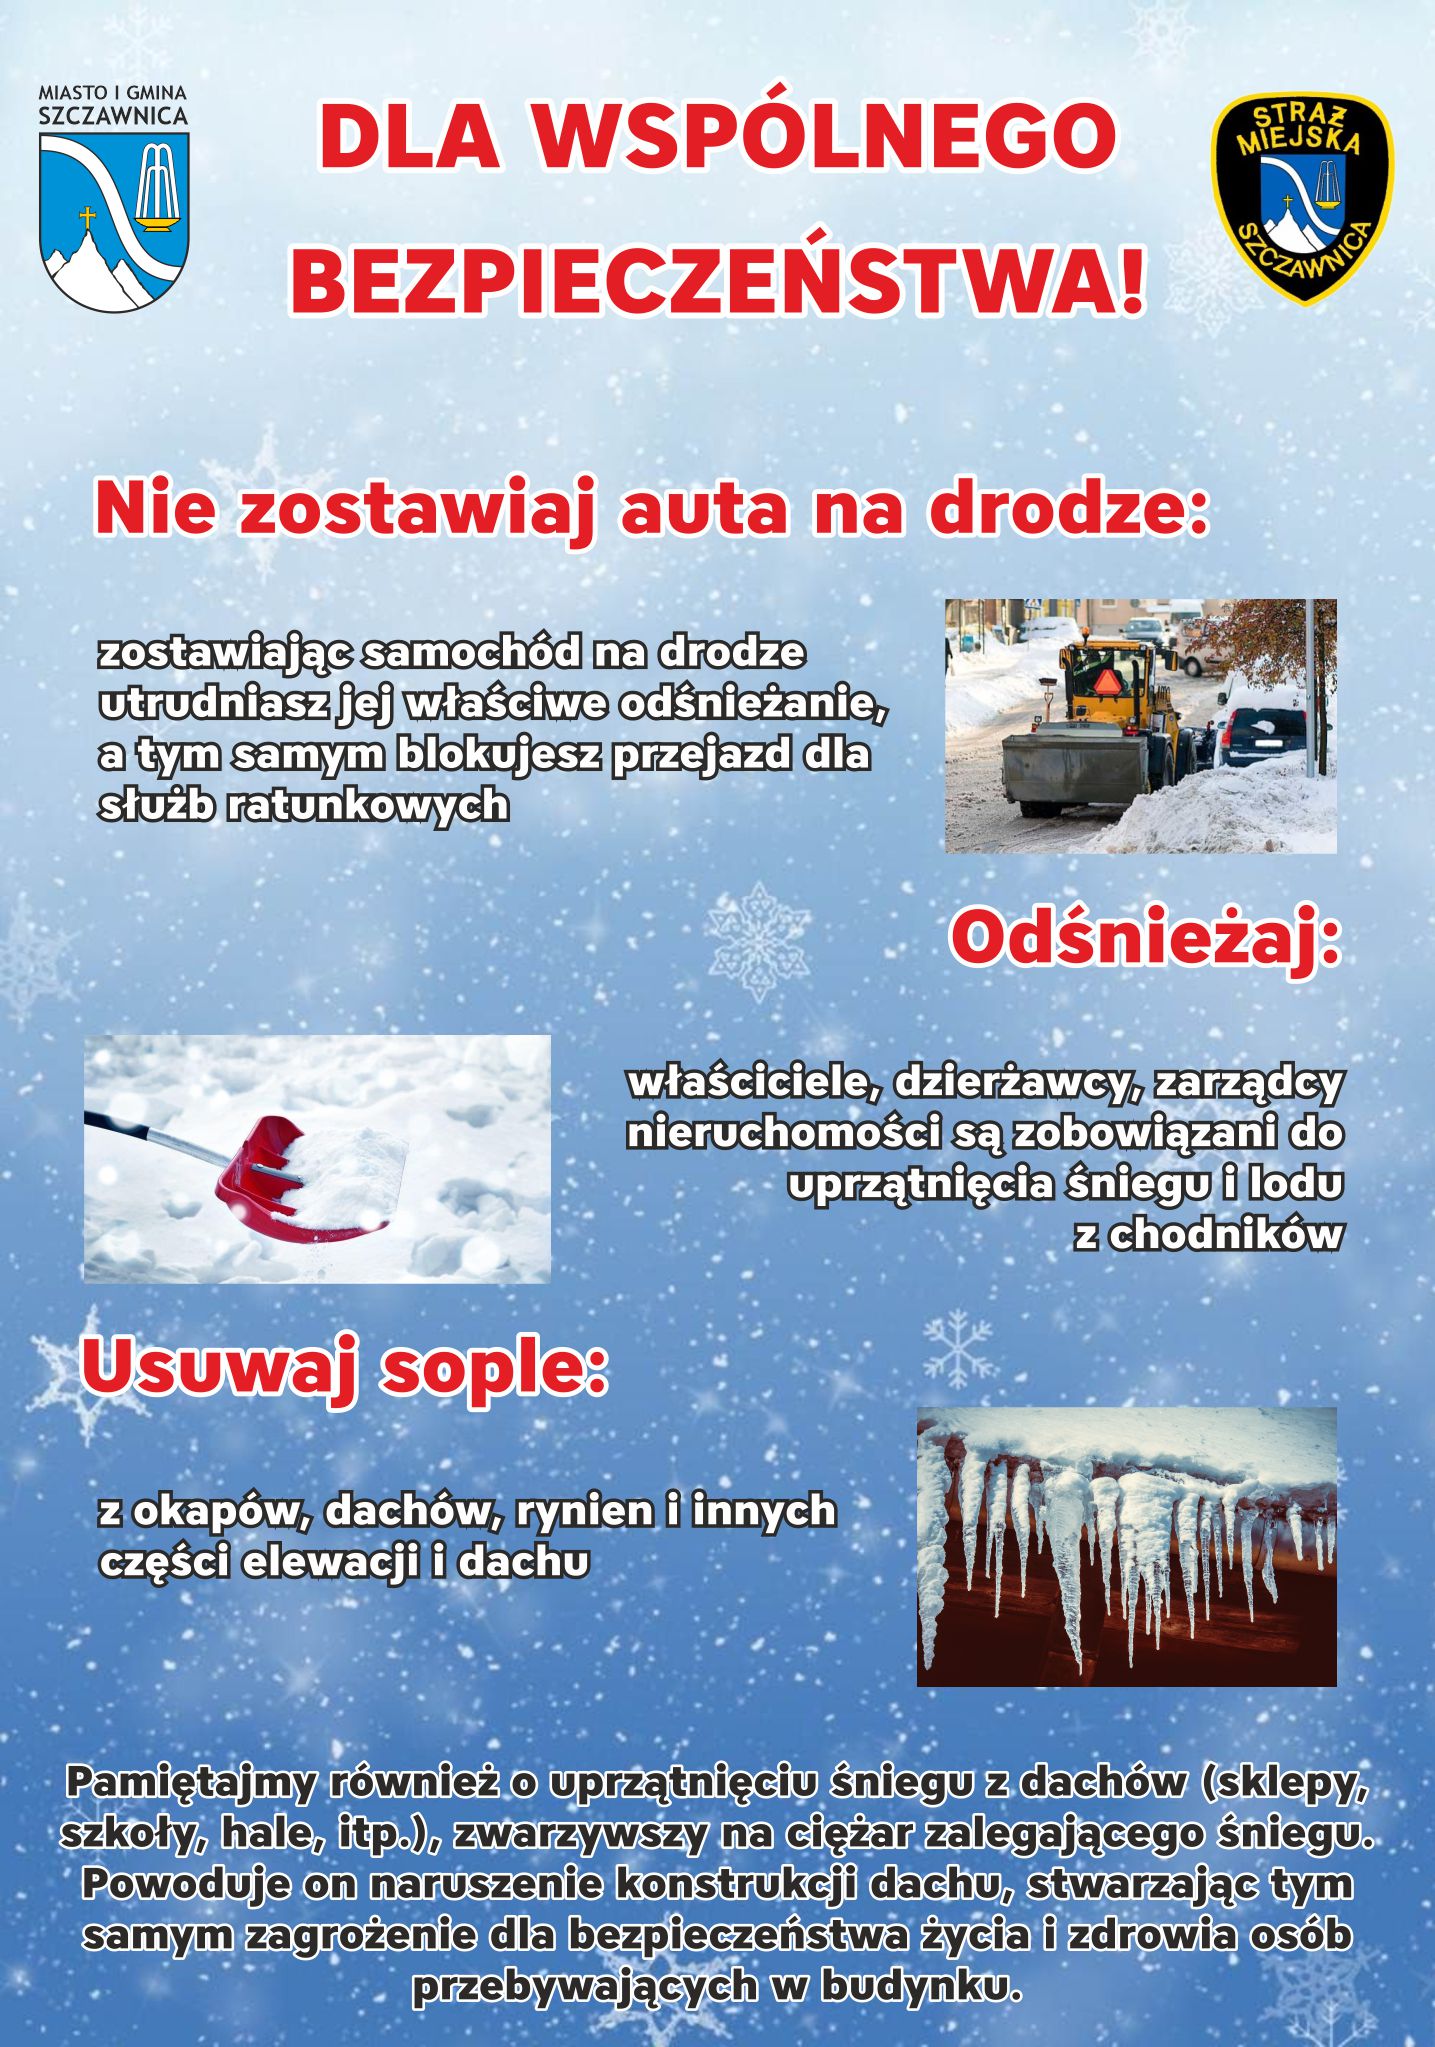 Plakat przedstawia zasady wsplnego bezpieczeństwa podczas zimy. W prawym górym rogu herb Straży miejskiej a po przeciwnej stronie Herb Szczawnicy